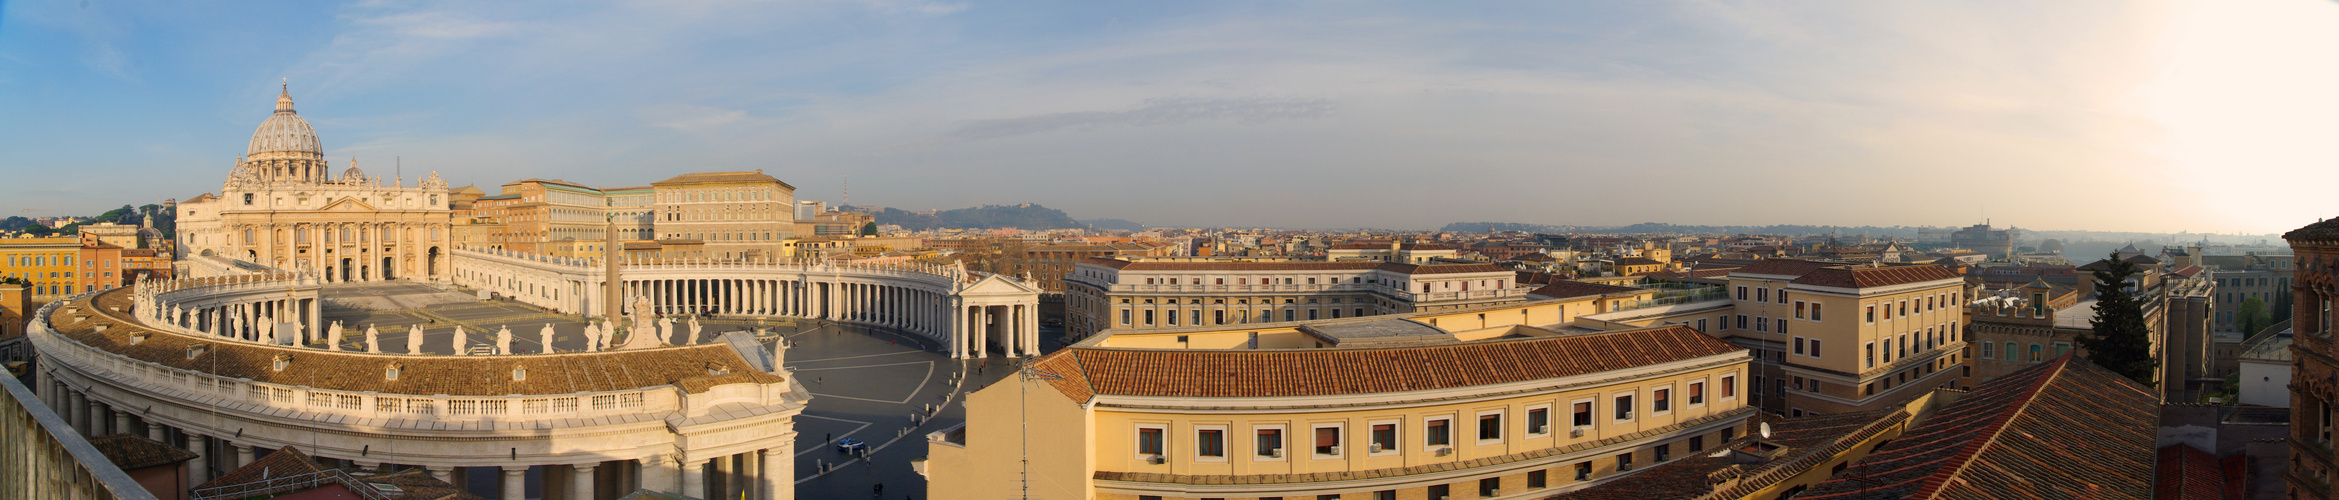 Vatikan-Panorama_01